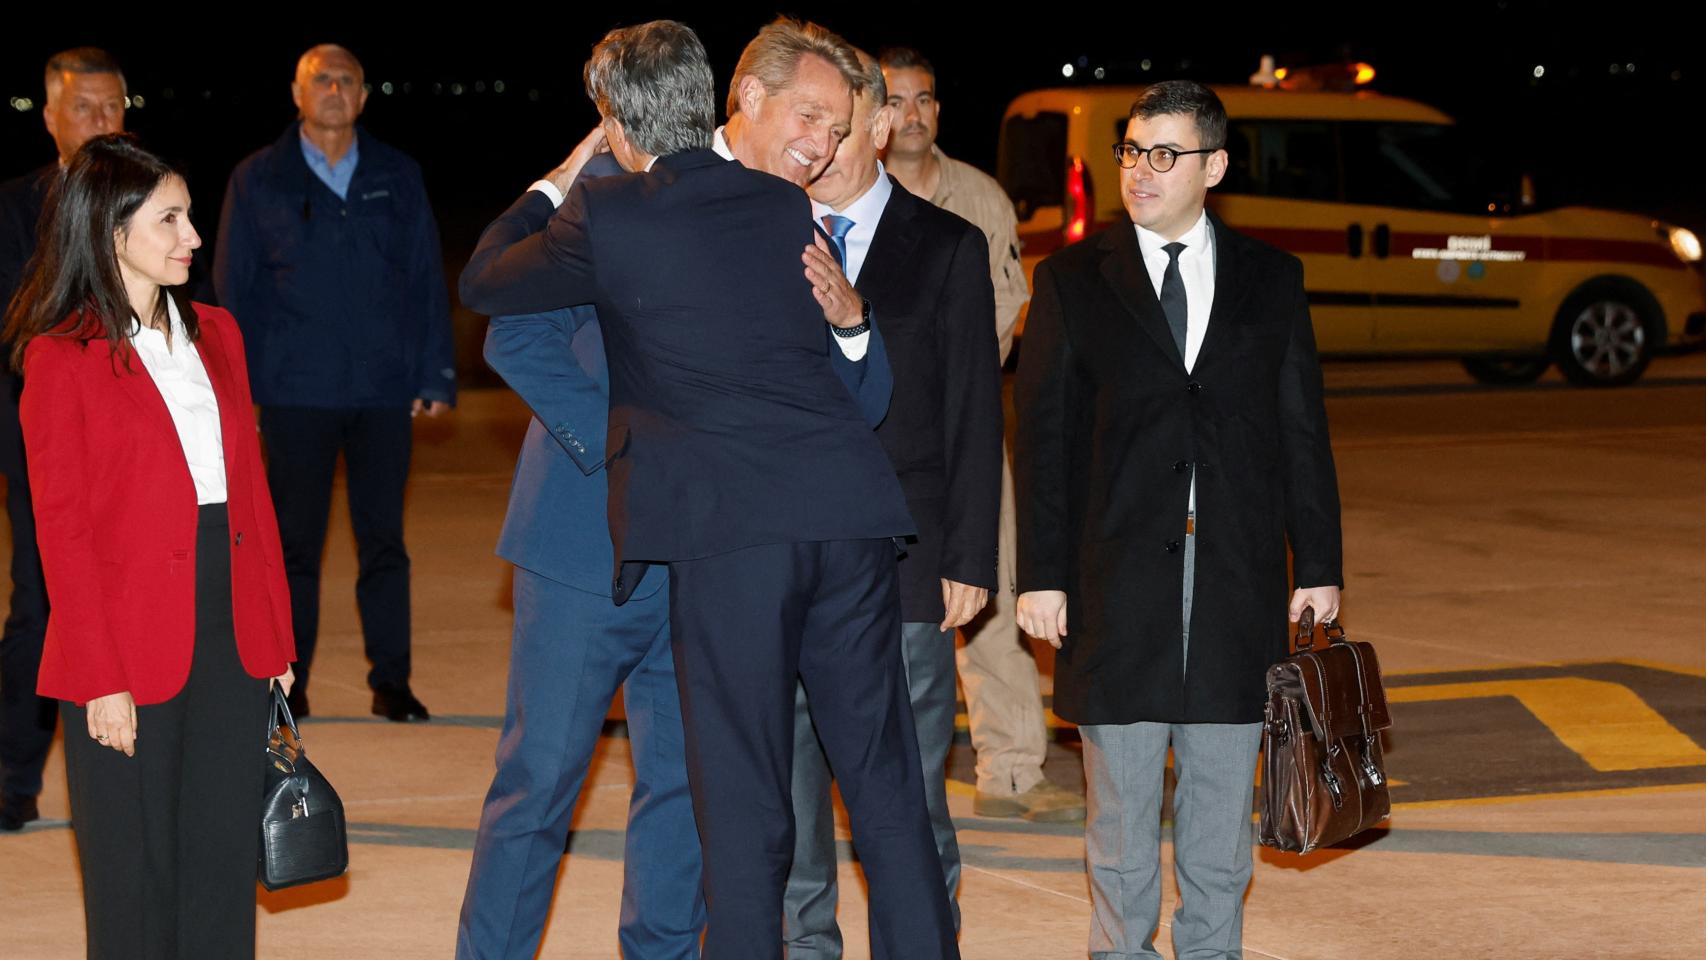 El Secretario de Estado de los Estados Unidos, Antony Blinken, es recibido por el Embajador de los Estados Unidos en Turquía, Jeff Flake, a su llegada al aeropuerto de Ankara.